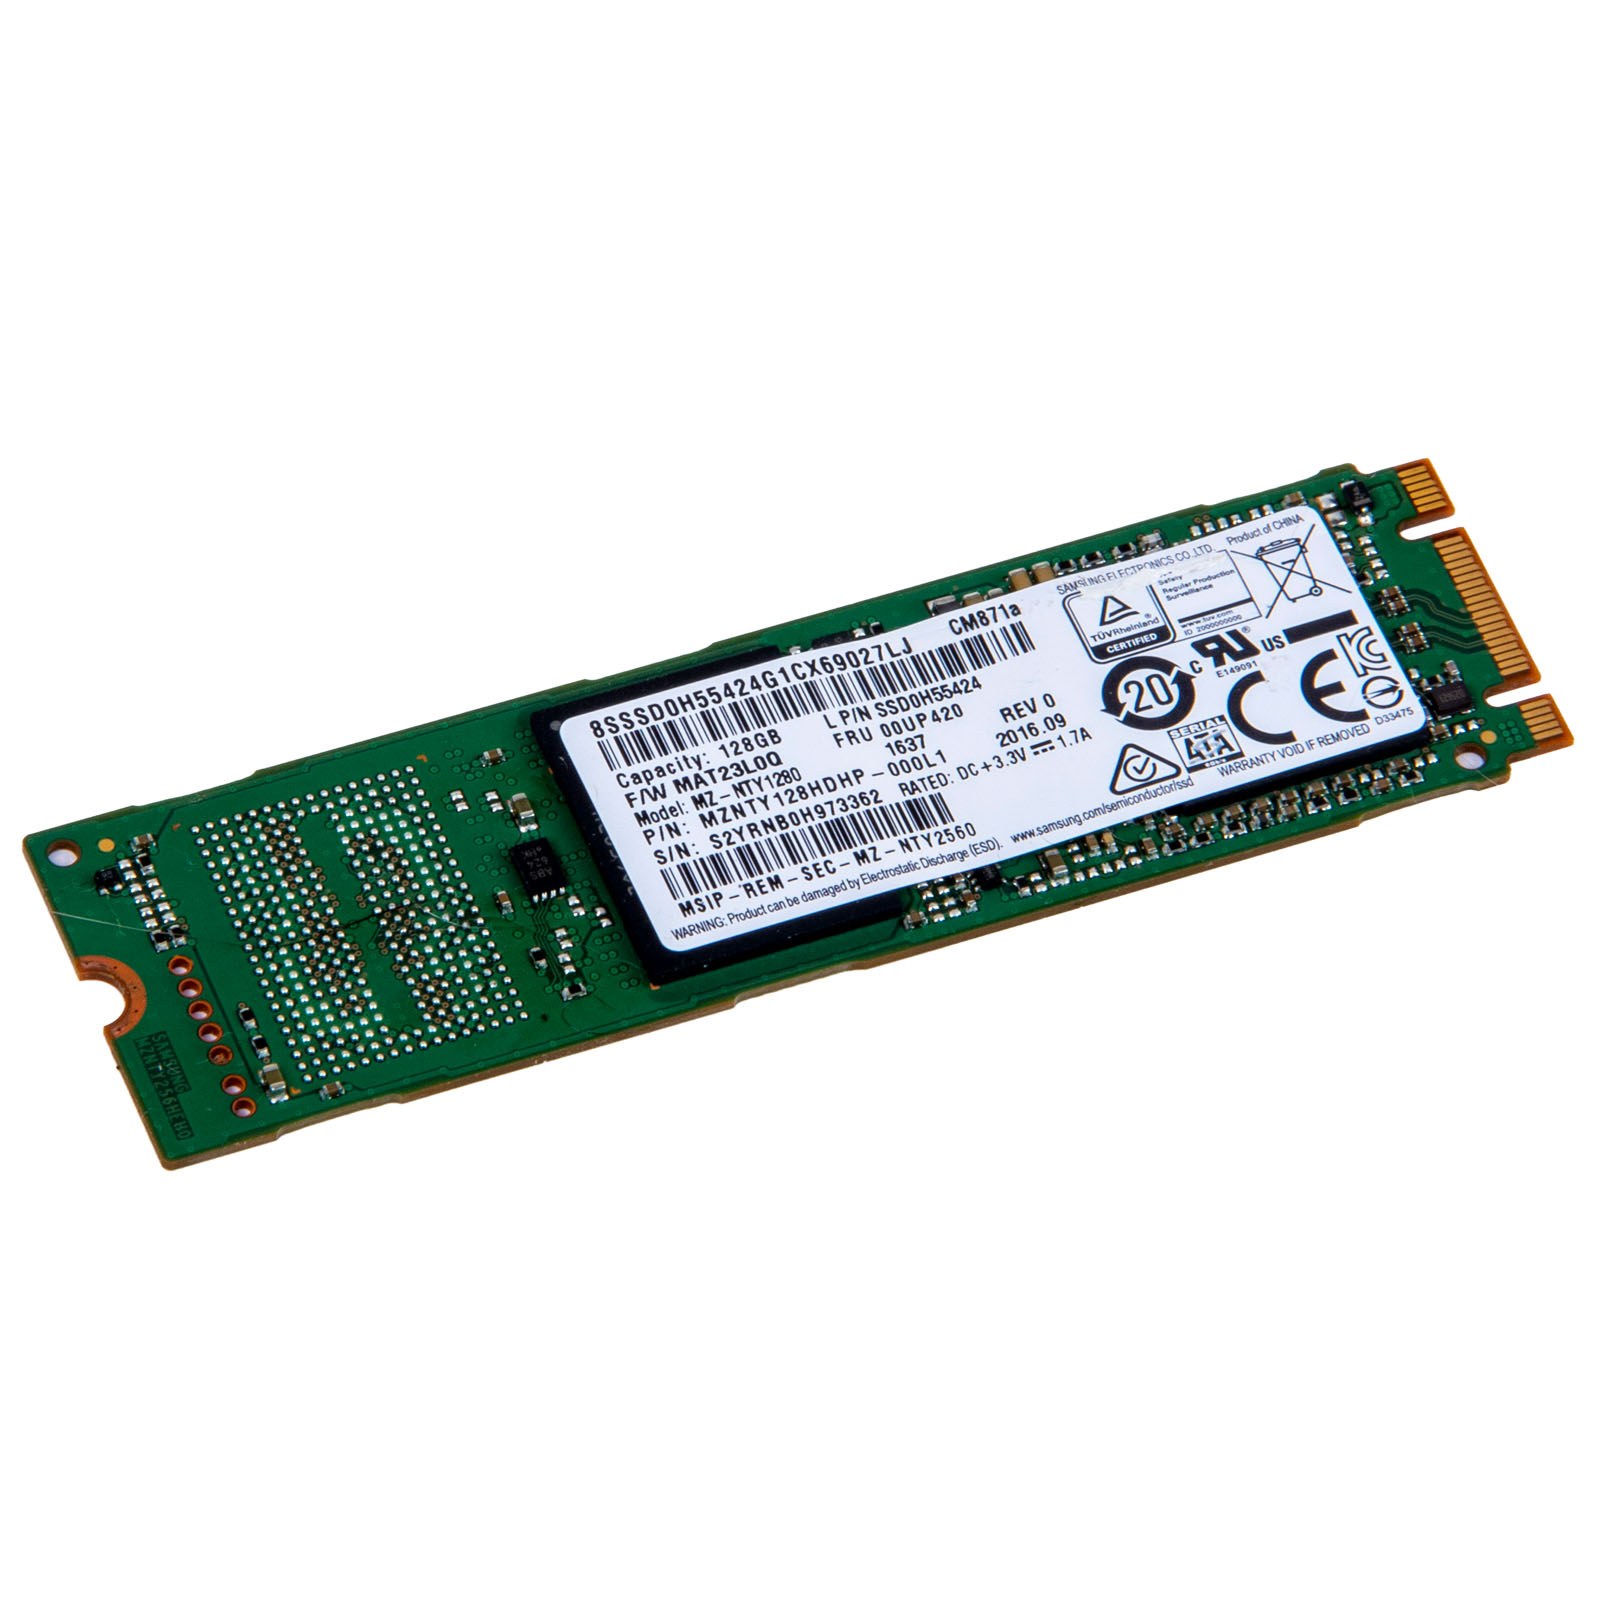 Dysk twardy Samsung 128 GB SATA III SSD M.2 2280